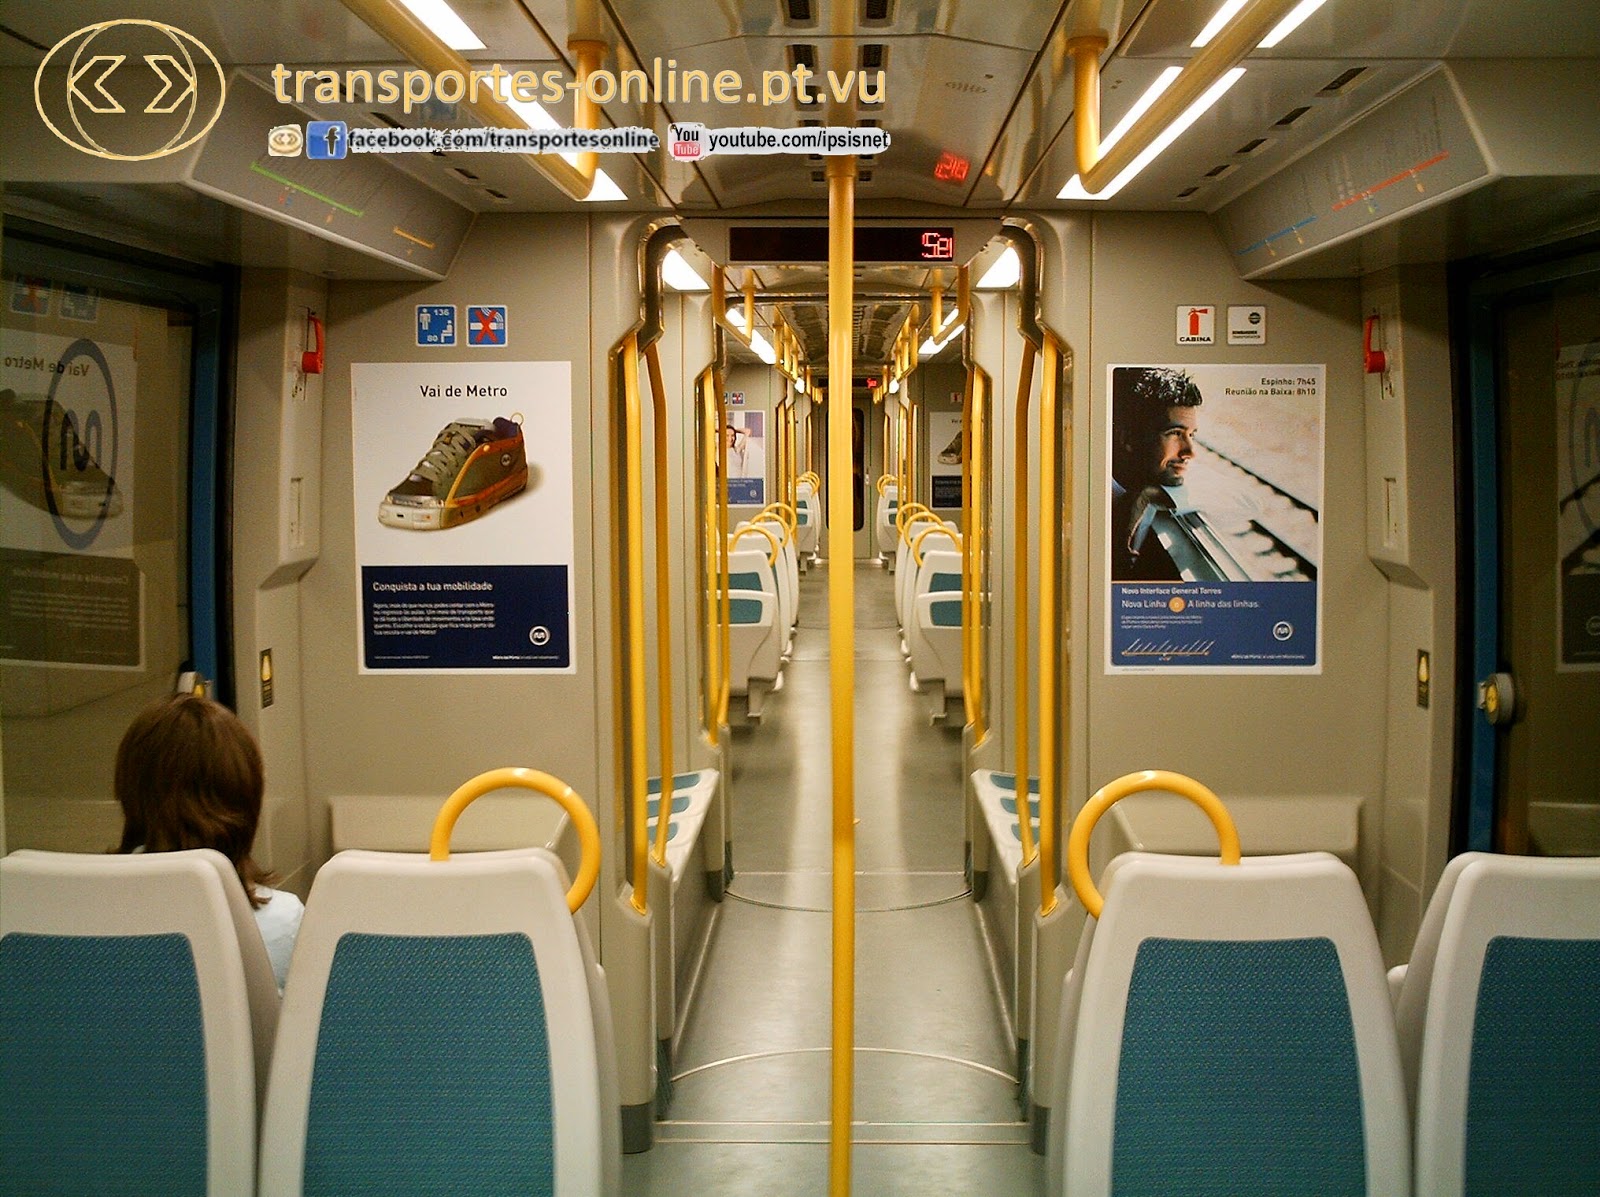 transportes-online.pt.vu